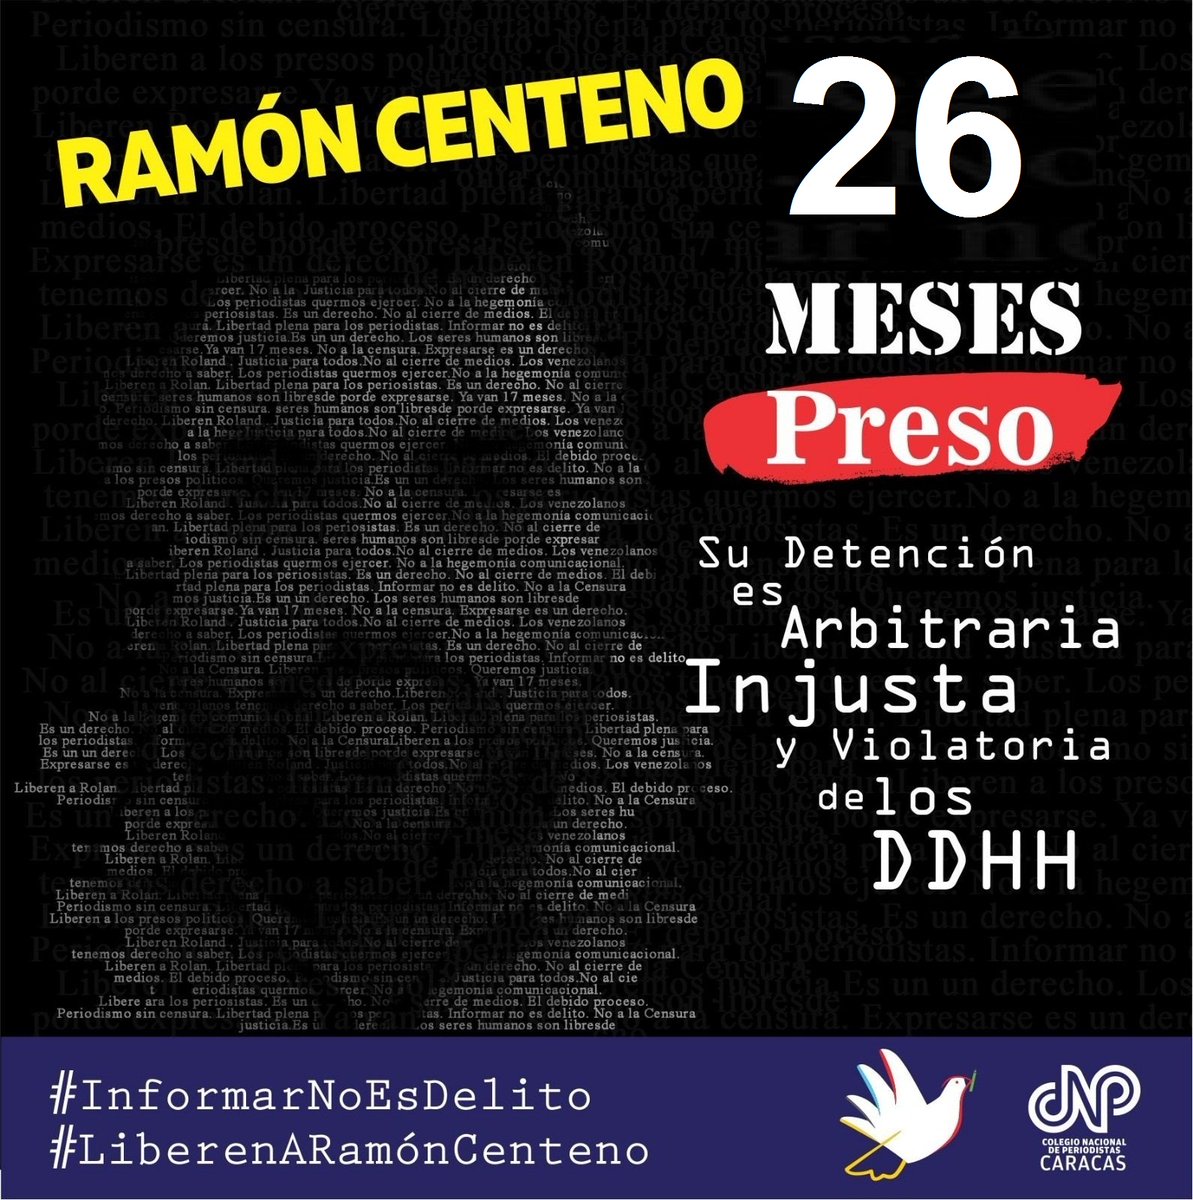 #9Abril #Hoy sigue juicio en contra del colega Ramón Centeno @elboligrafo2 ,quien lleva 26 meses preso injustamente. #LiberenARamonCenteno